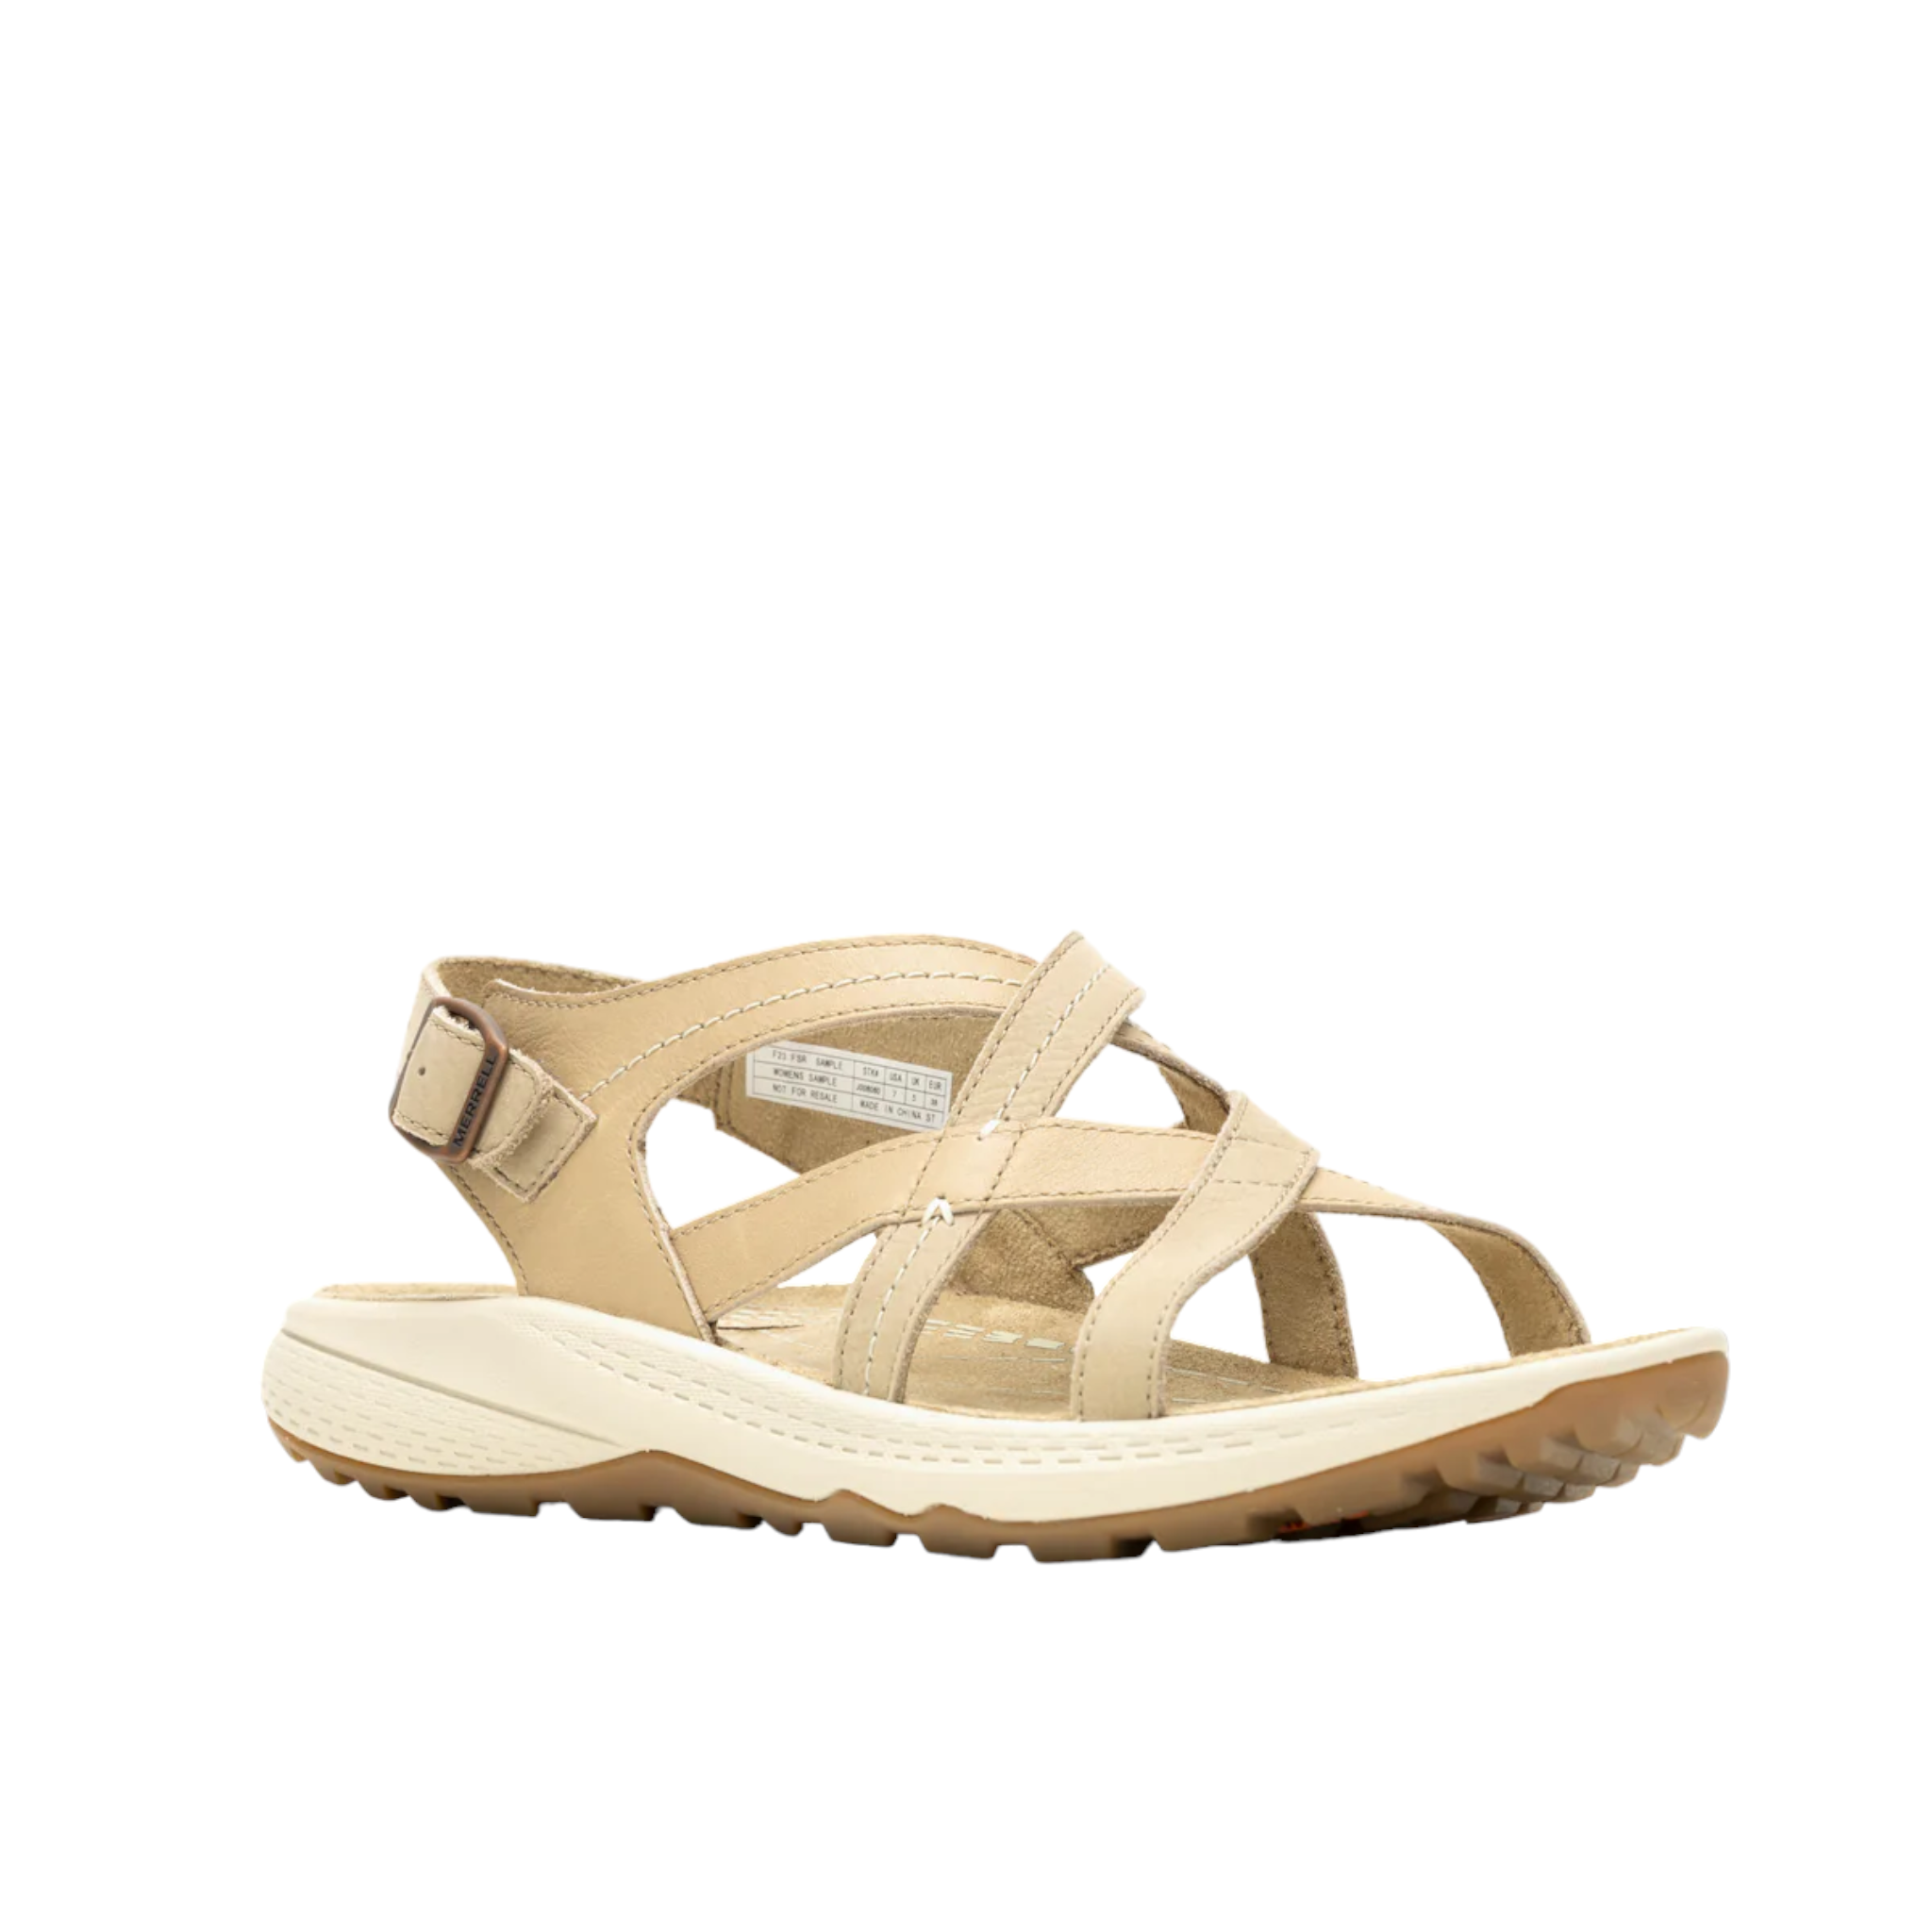 Momentum Agave - shoe&me - Merrell - Sandal - Sandals, Summer, Womens